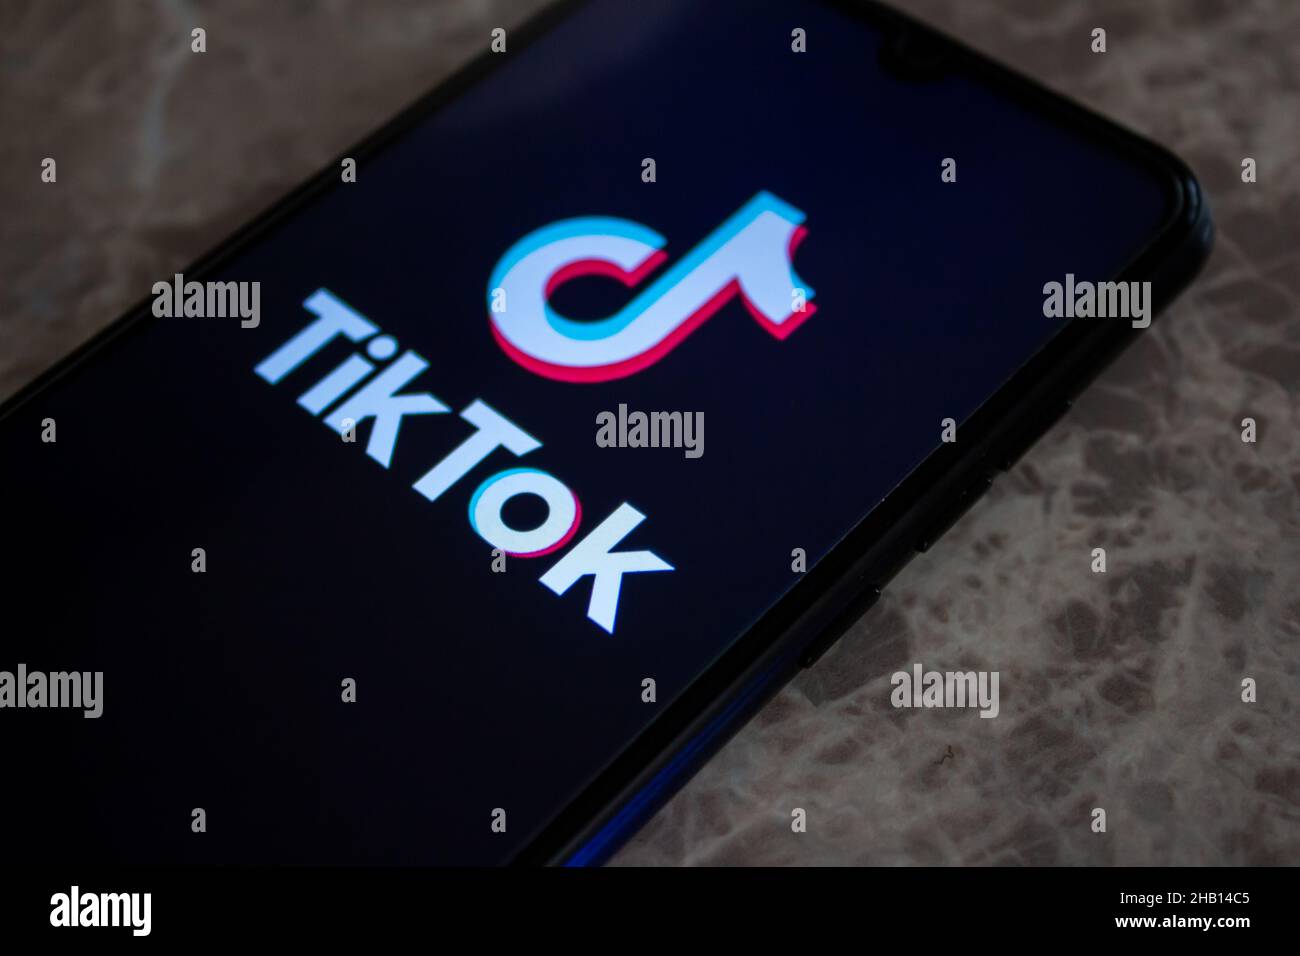 Afyonkarahisar, Turchia - 13 dicembre 2021: Il logo dell'app TikTok sullo schermo dello smartphone, l'icona TikTok dell'applicazione di social media. Foto Stock